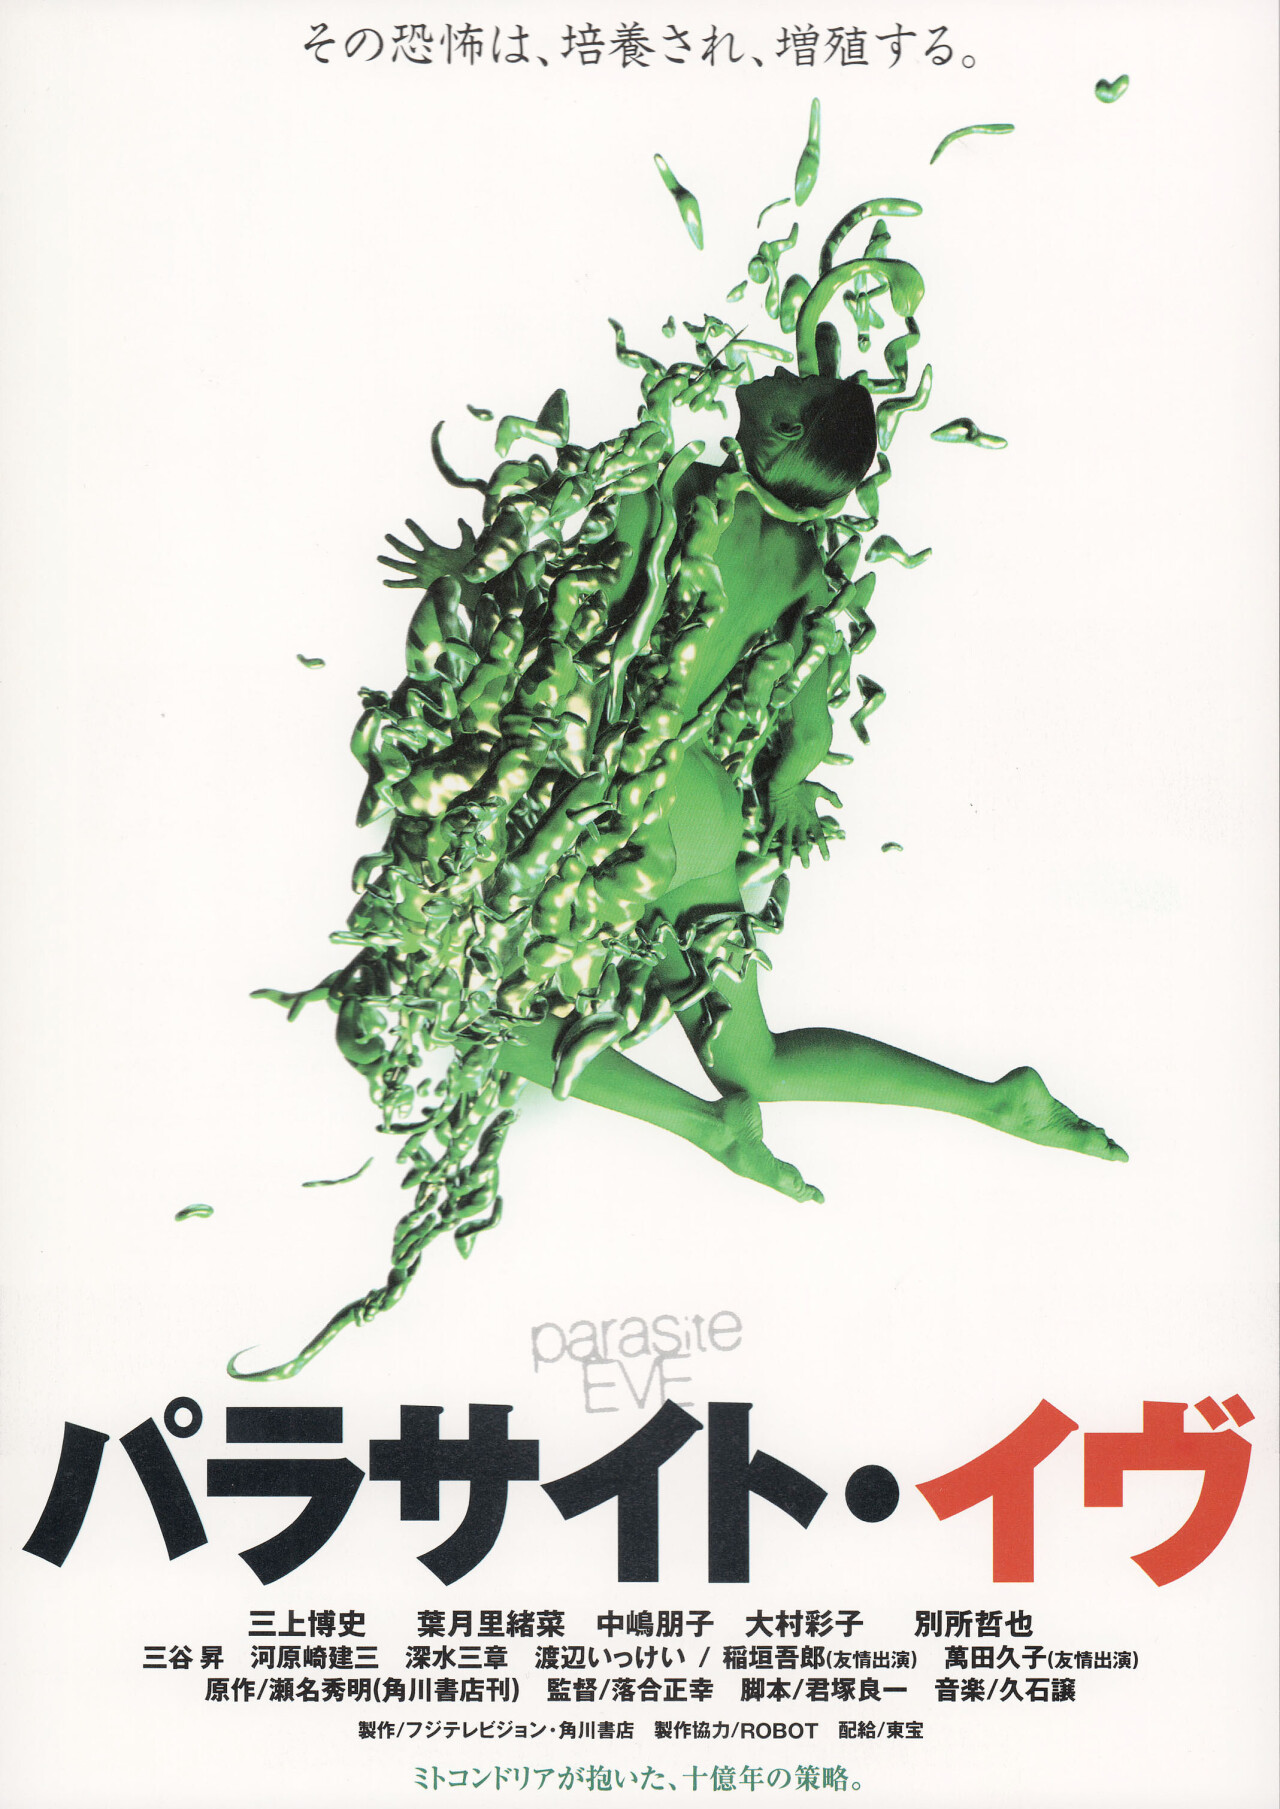 Паразит Ева (Parasite Eve, 1997), режиссёр Масаюки Отиай, японский постер к фильму (ужасы, 1997 год)